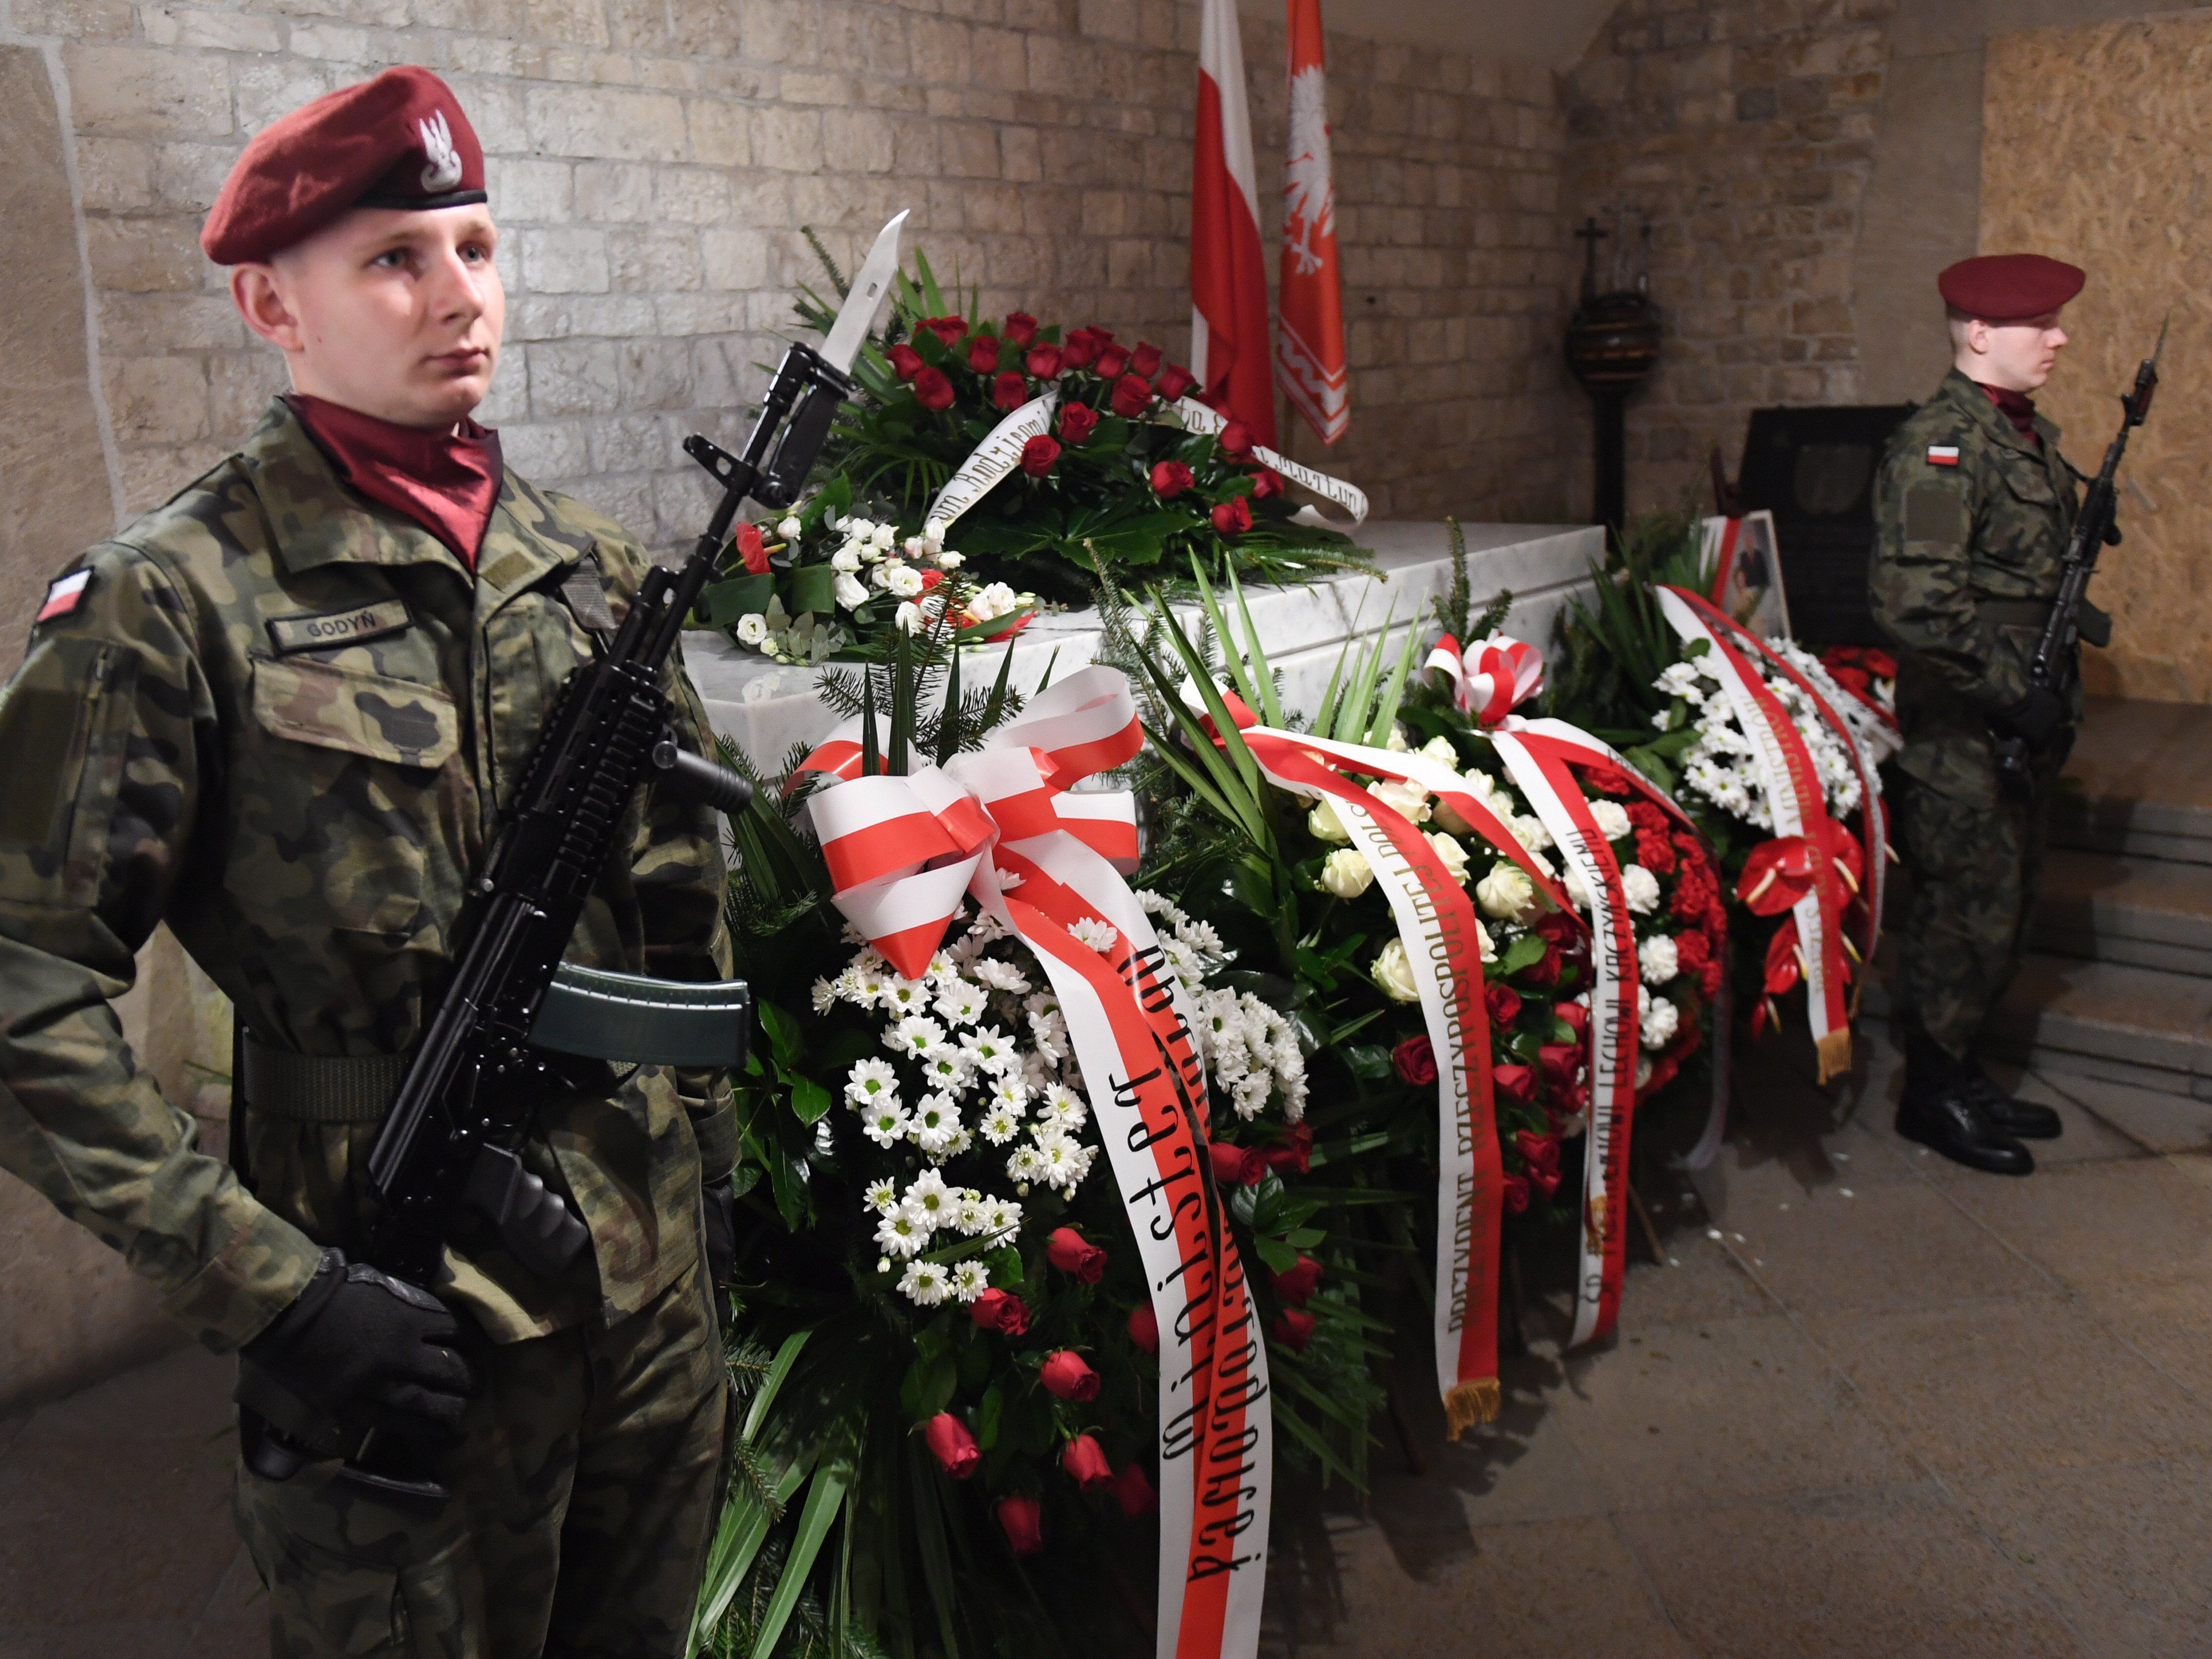 Lech Kaczynski volt lengyel elnök és felesége, Maria Kaczynska szarkofágja a krakkói királyi várban, a Wawel székesegyház kriptájában a házaspár halálát okozó repülőszerencsétlenség nyolcadik évfordulójának alkalmából 2018. április 10-én. A házaspárt és 94 másik embert  köztük az állami szféra és a hadsereg több vezető személyiségét  szállító repülőgép 2010. április 10-én zuhant le az oroszországi Szmolenszk közelében. (MTI/EPA/Jacek Bednarczyk)